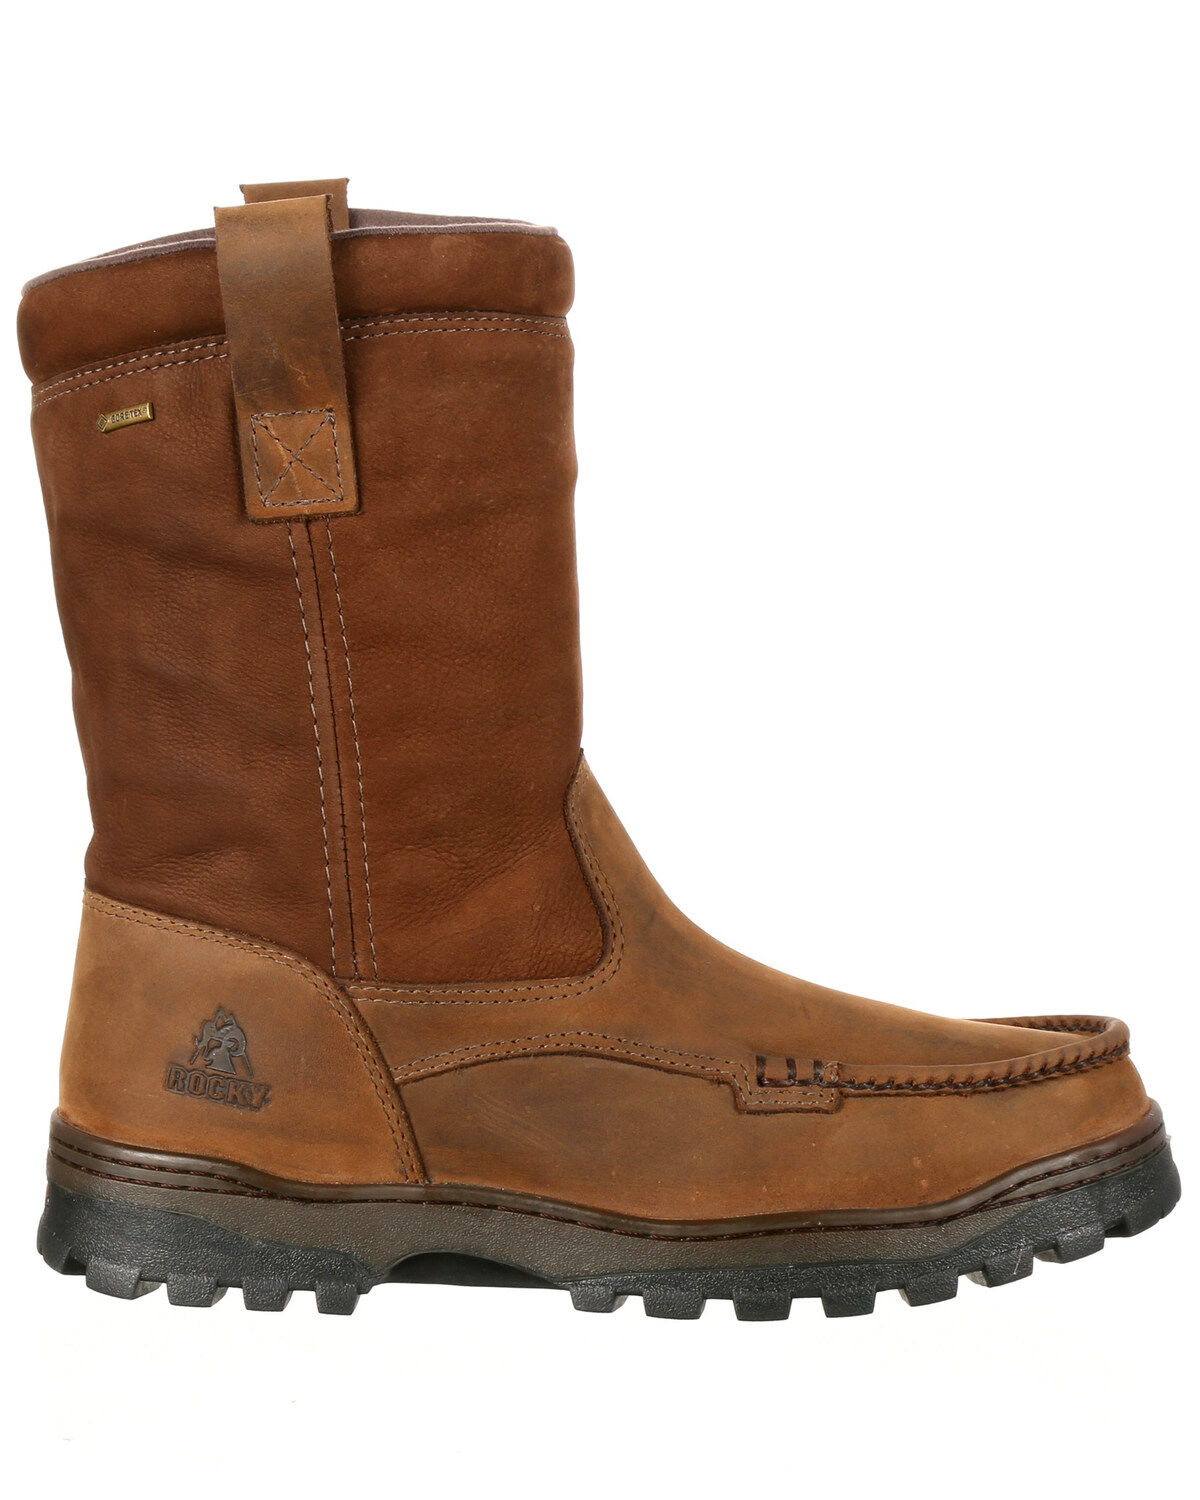 men's moc toe waterproof boots